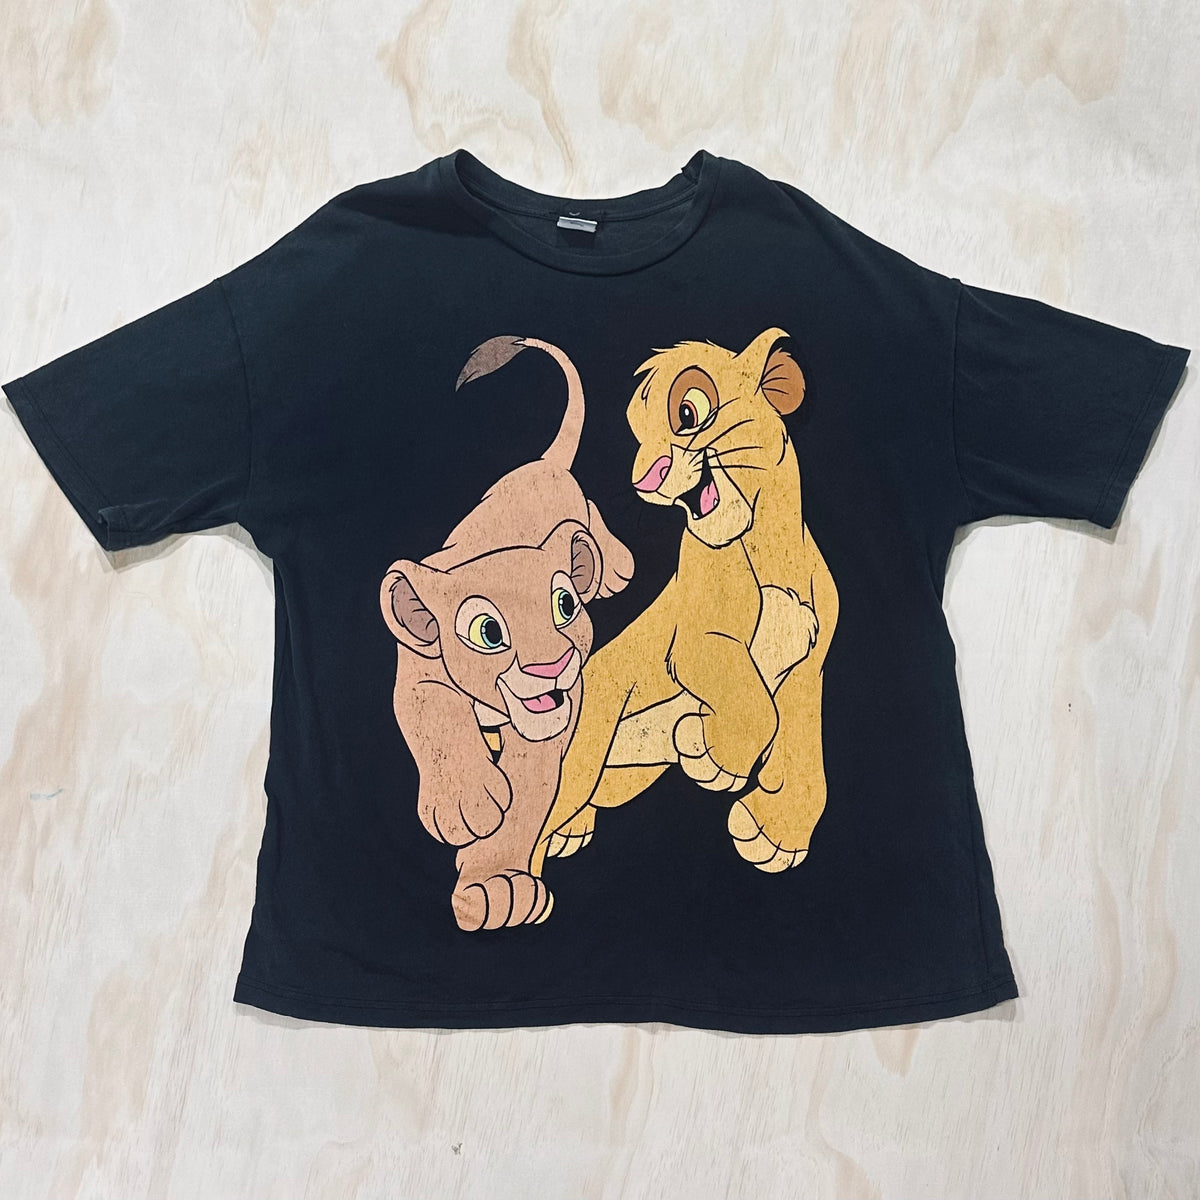 90s Vintage Disney The Lion King Nala and Simba shirt